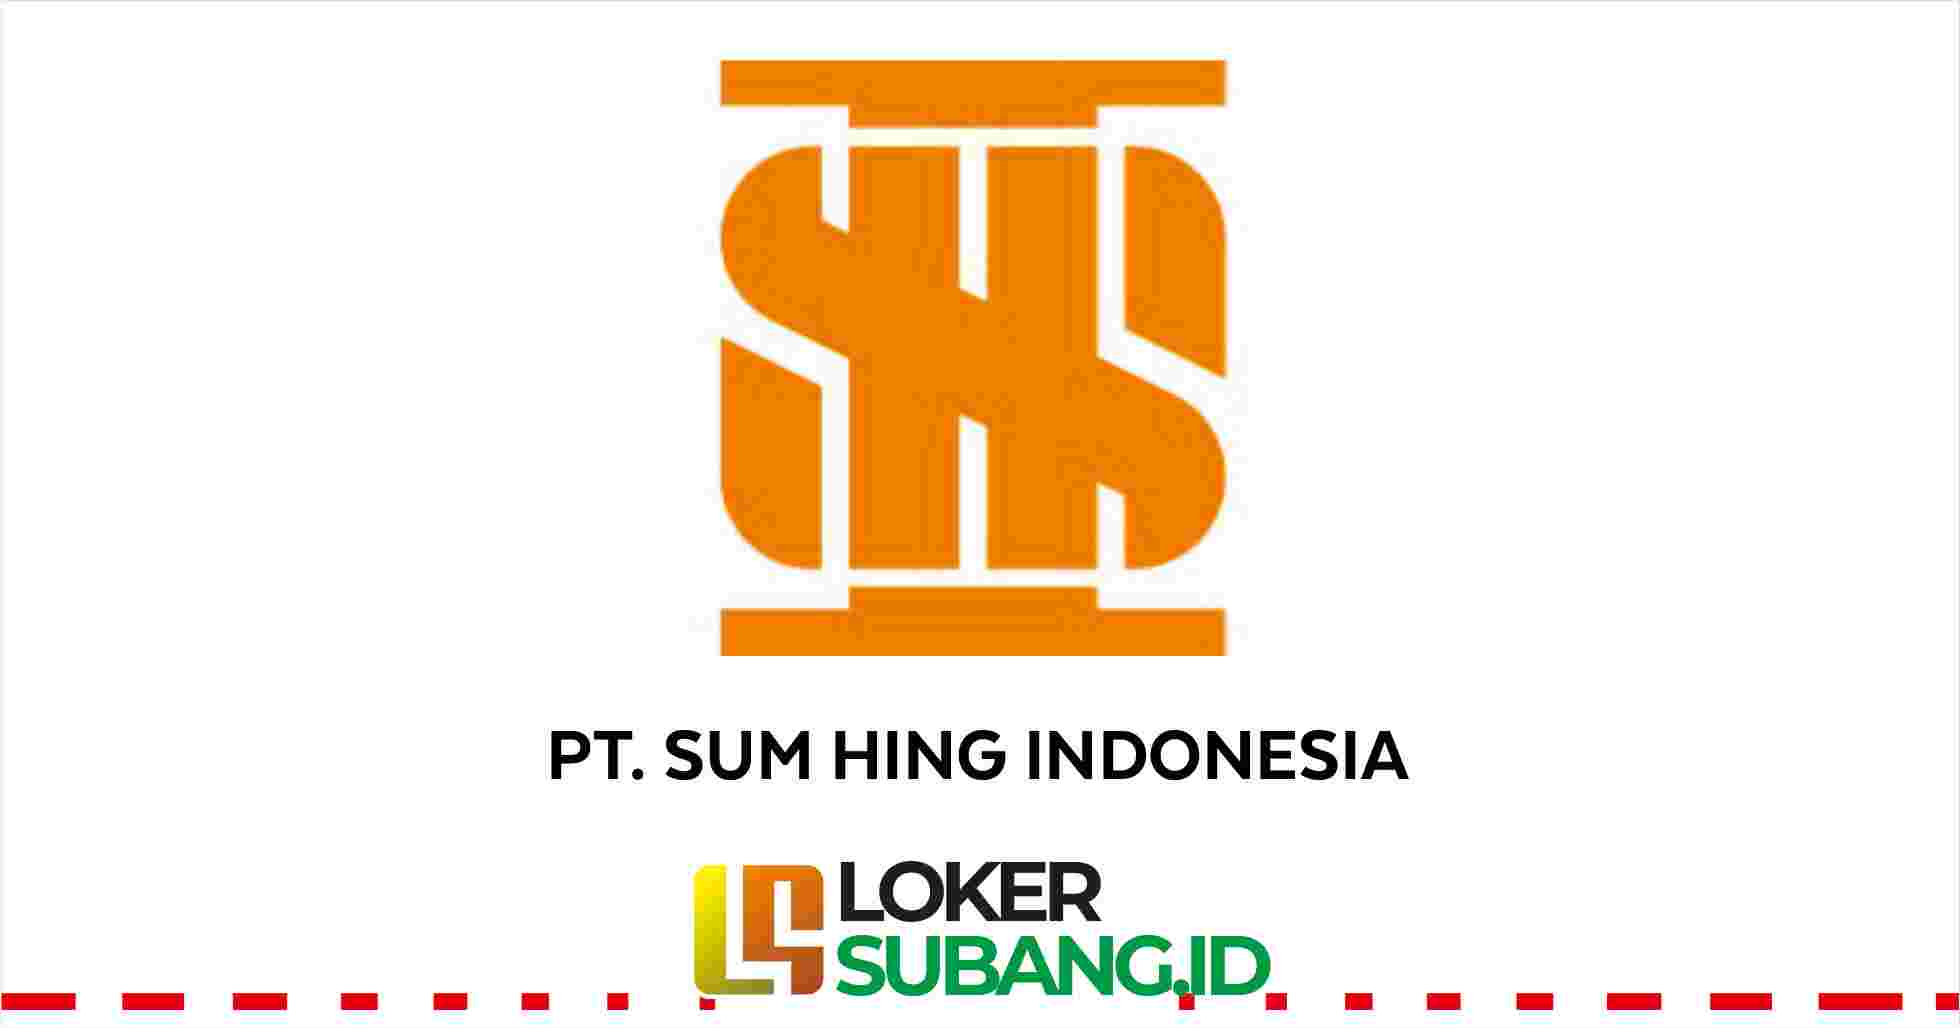 PT Sum Hing Indonesia